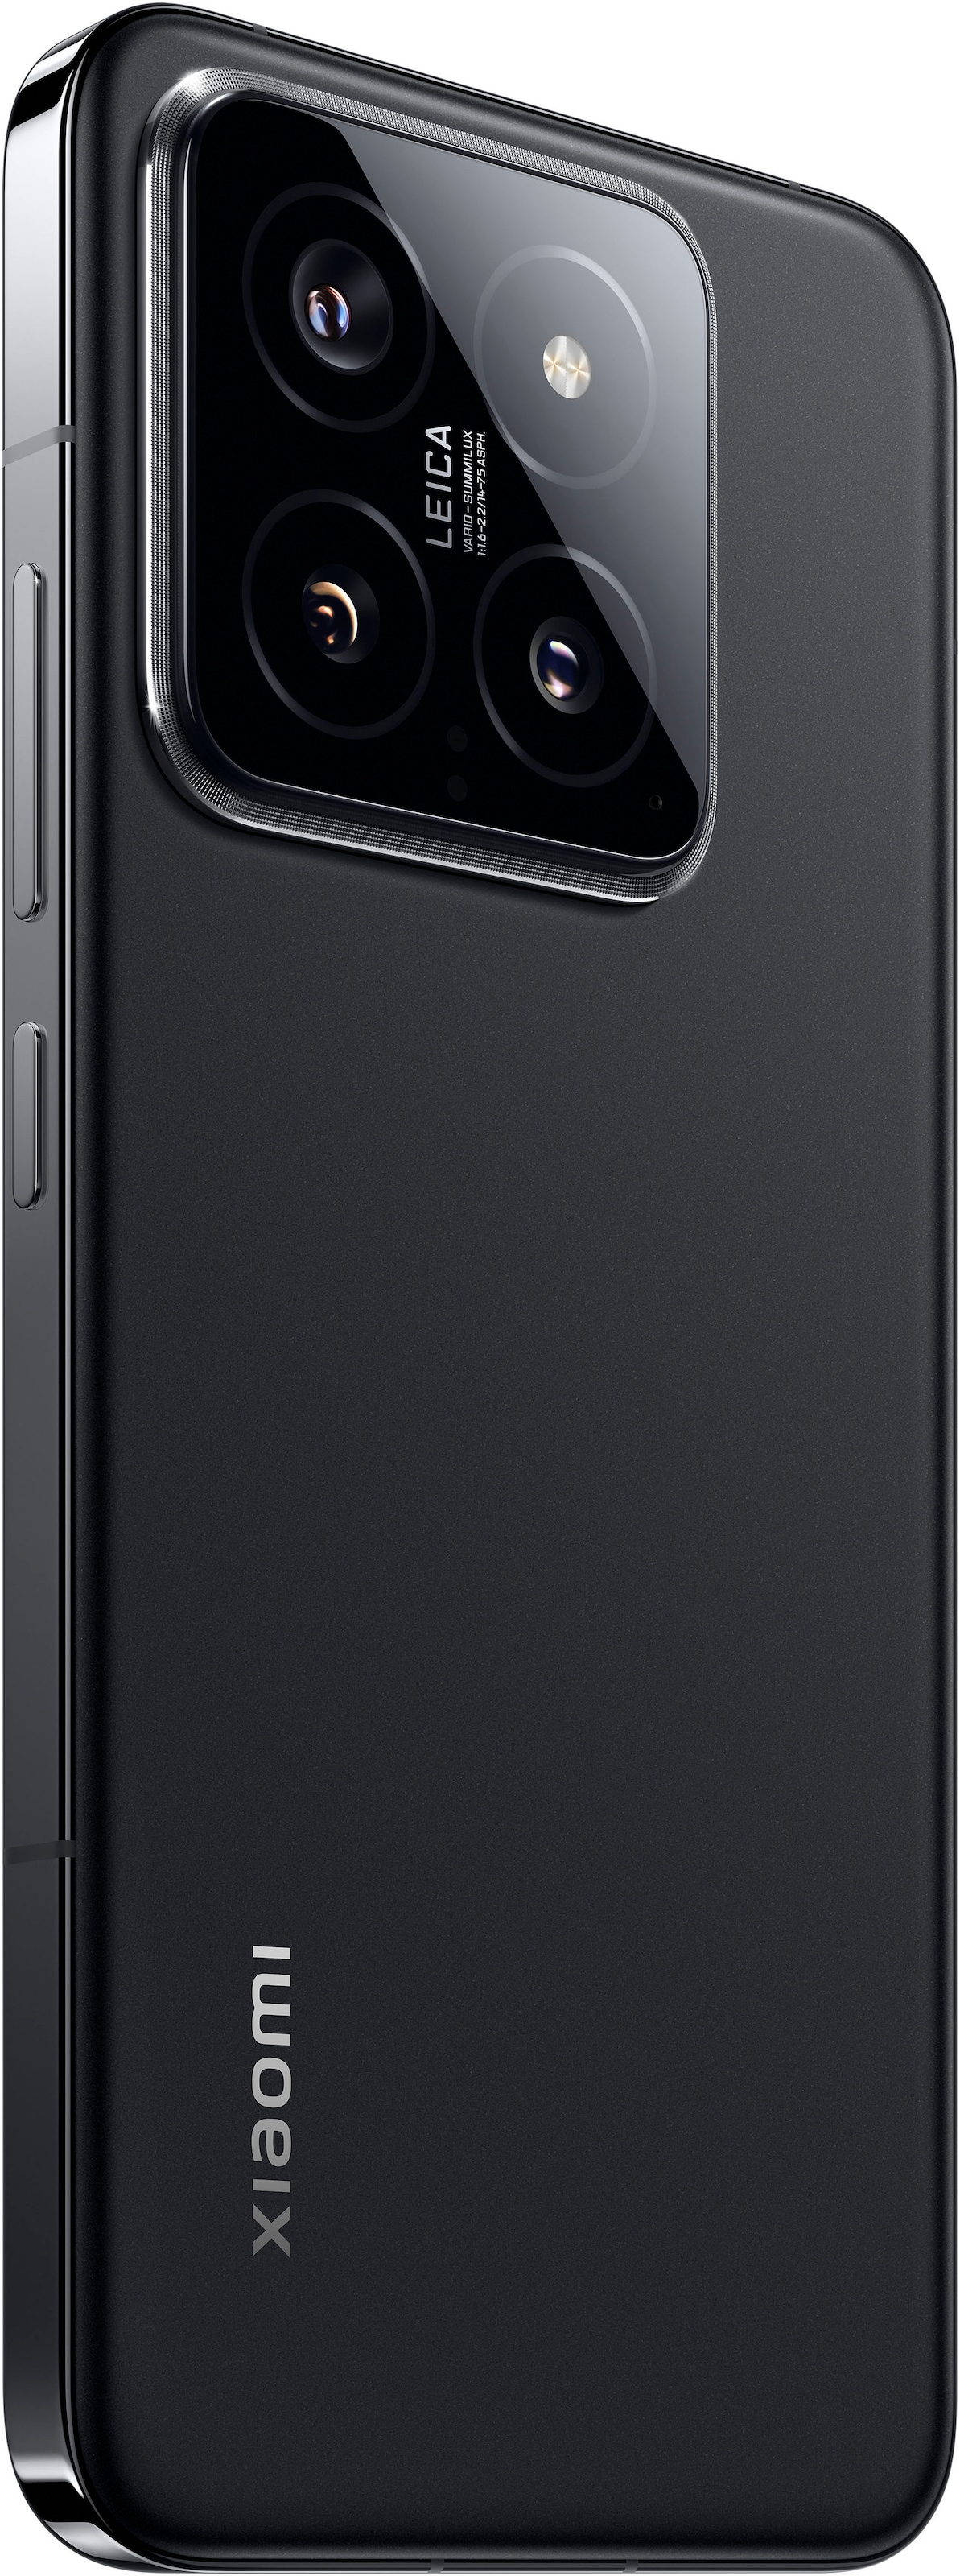 Xiaomi Smartphone »14 512 Gb«, schwarz, 16,15 cm/6,36 Zoll, 512 GB Speicherplatz, 50 MP Kamera